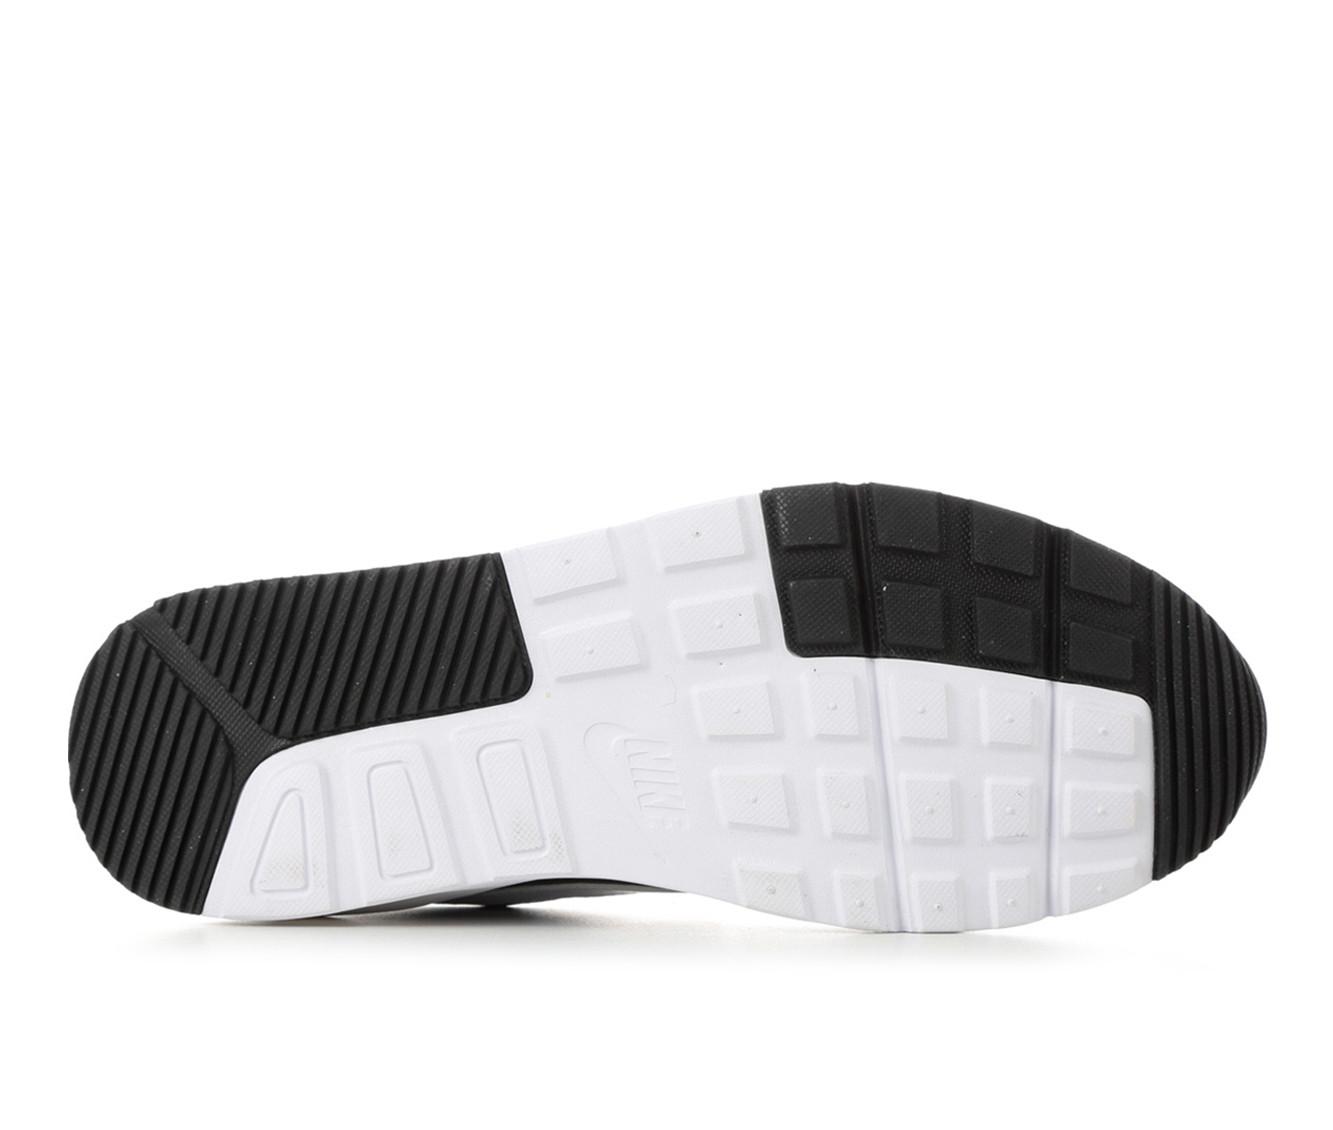 Men's Nike Air Max SC Sneakers | Shoe Carnival